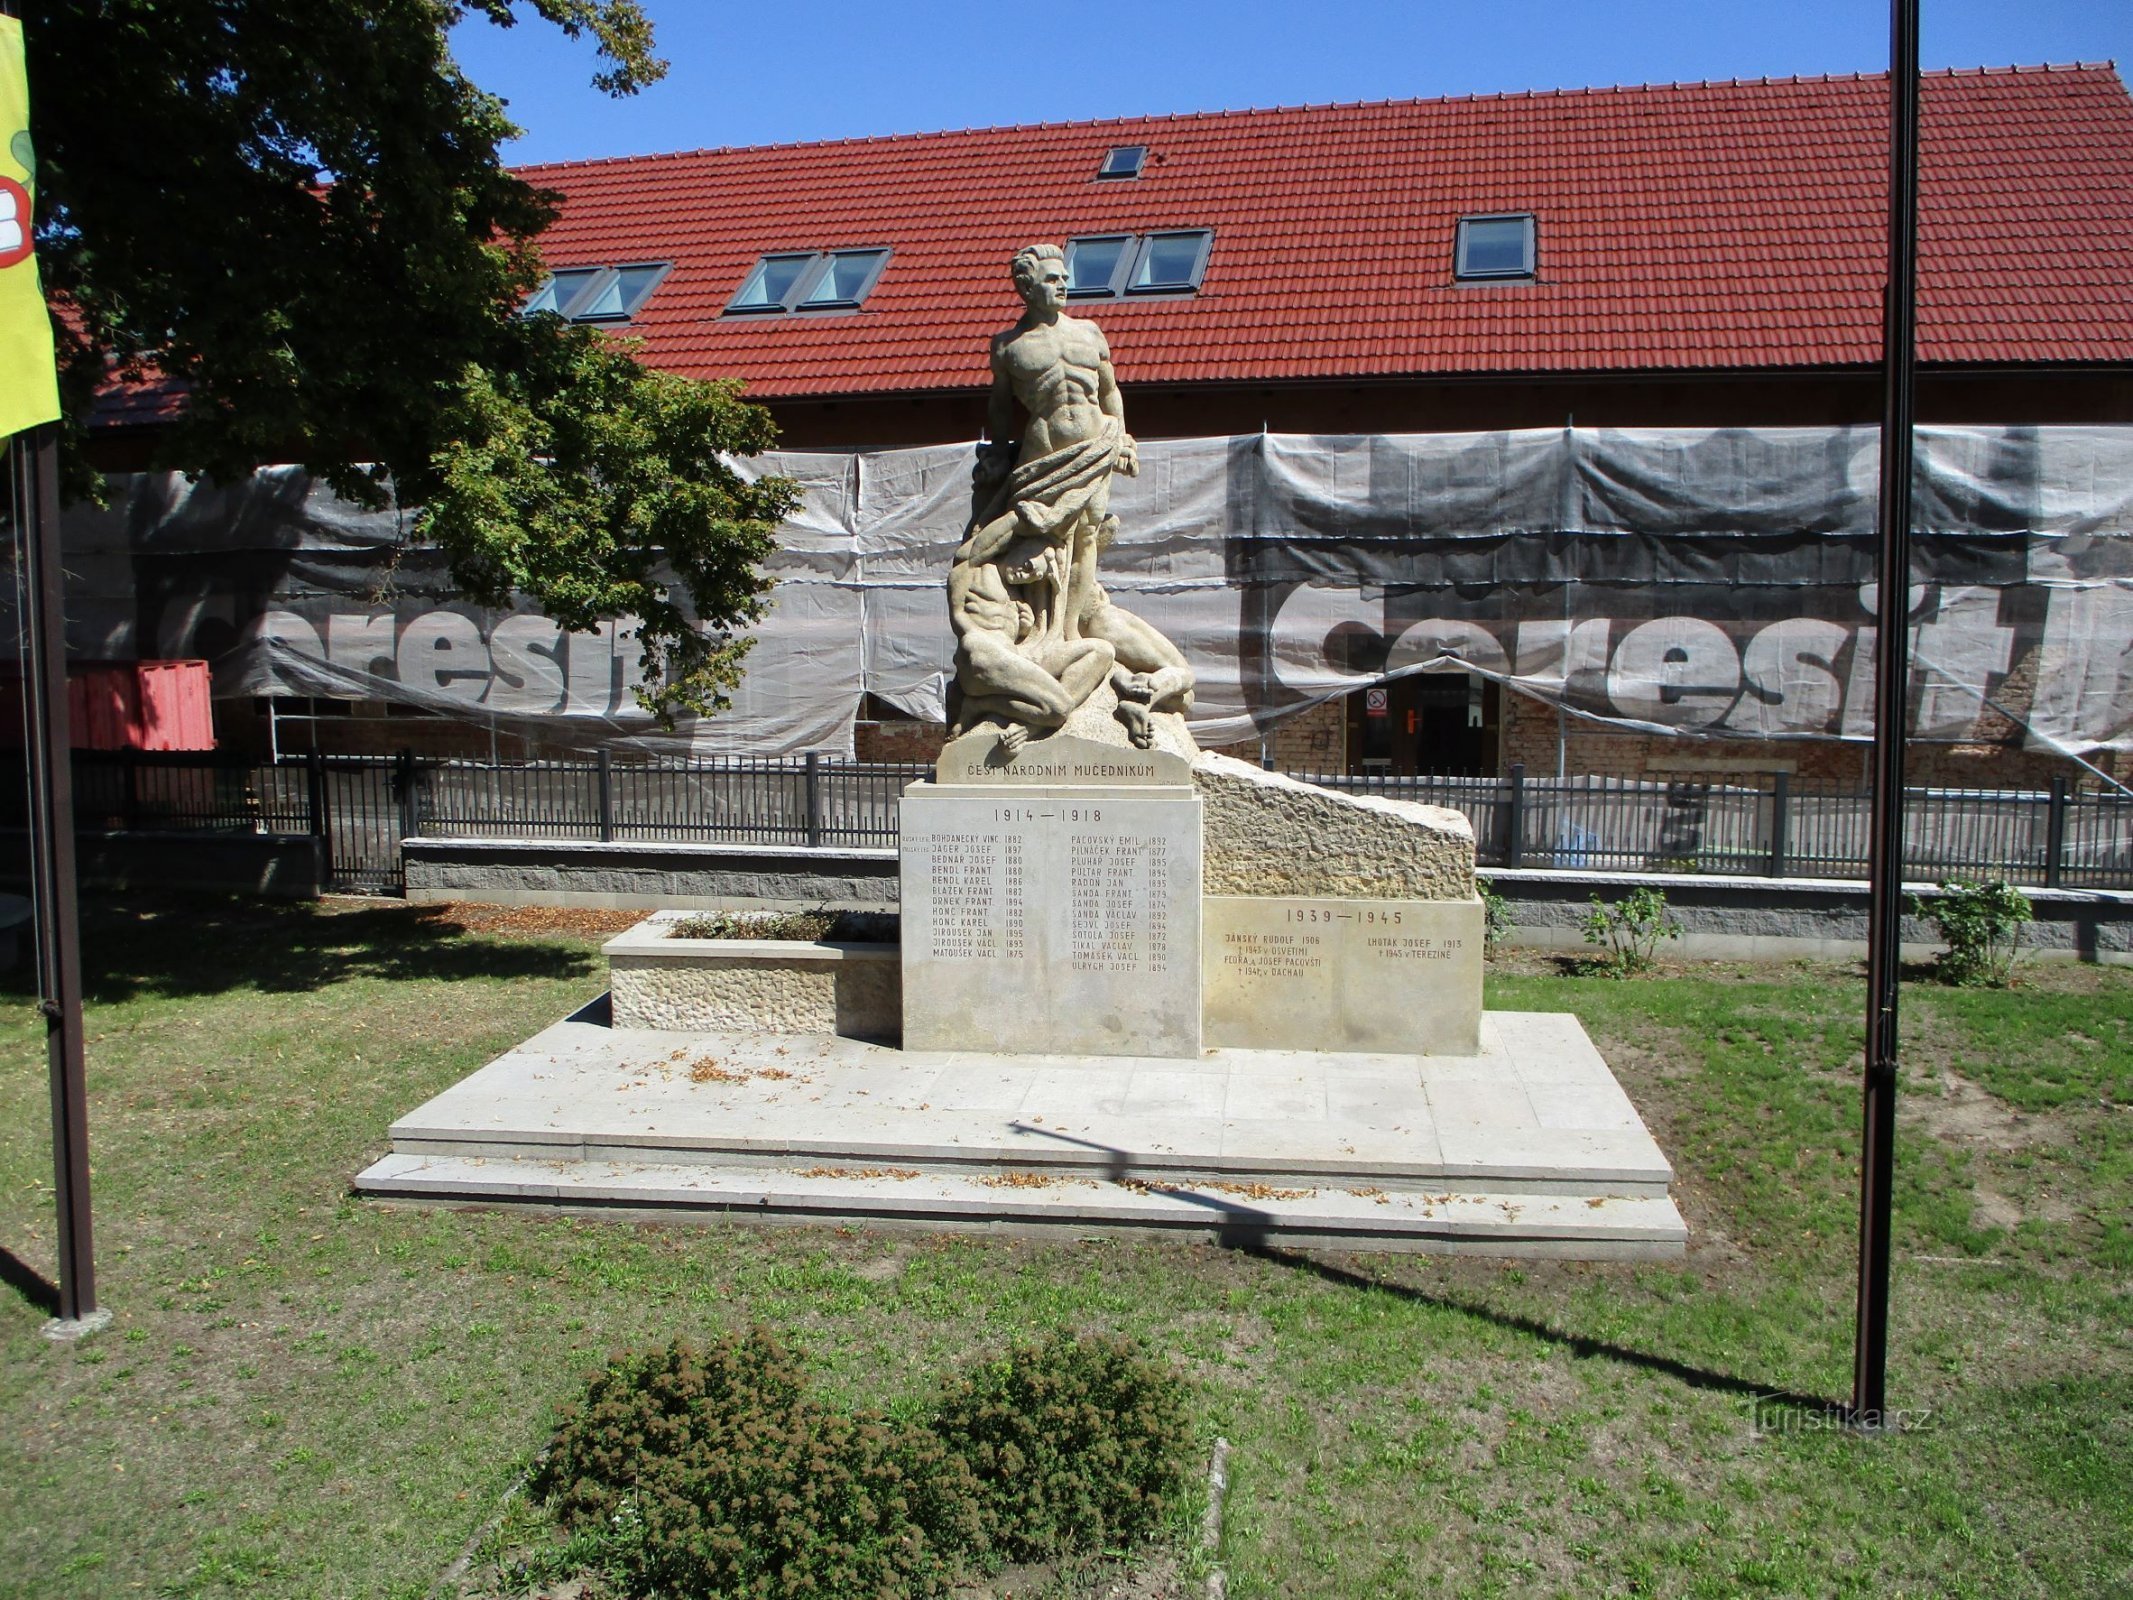 Spomenik žrtvama 1. i 2. svjetskog rata (Stěžery, 18.8.2019. travnja XNUMX.)